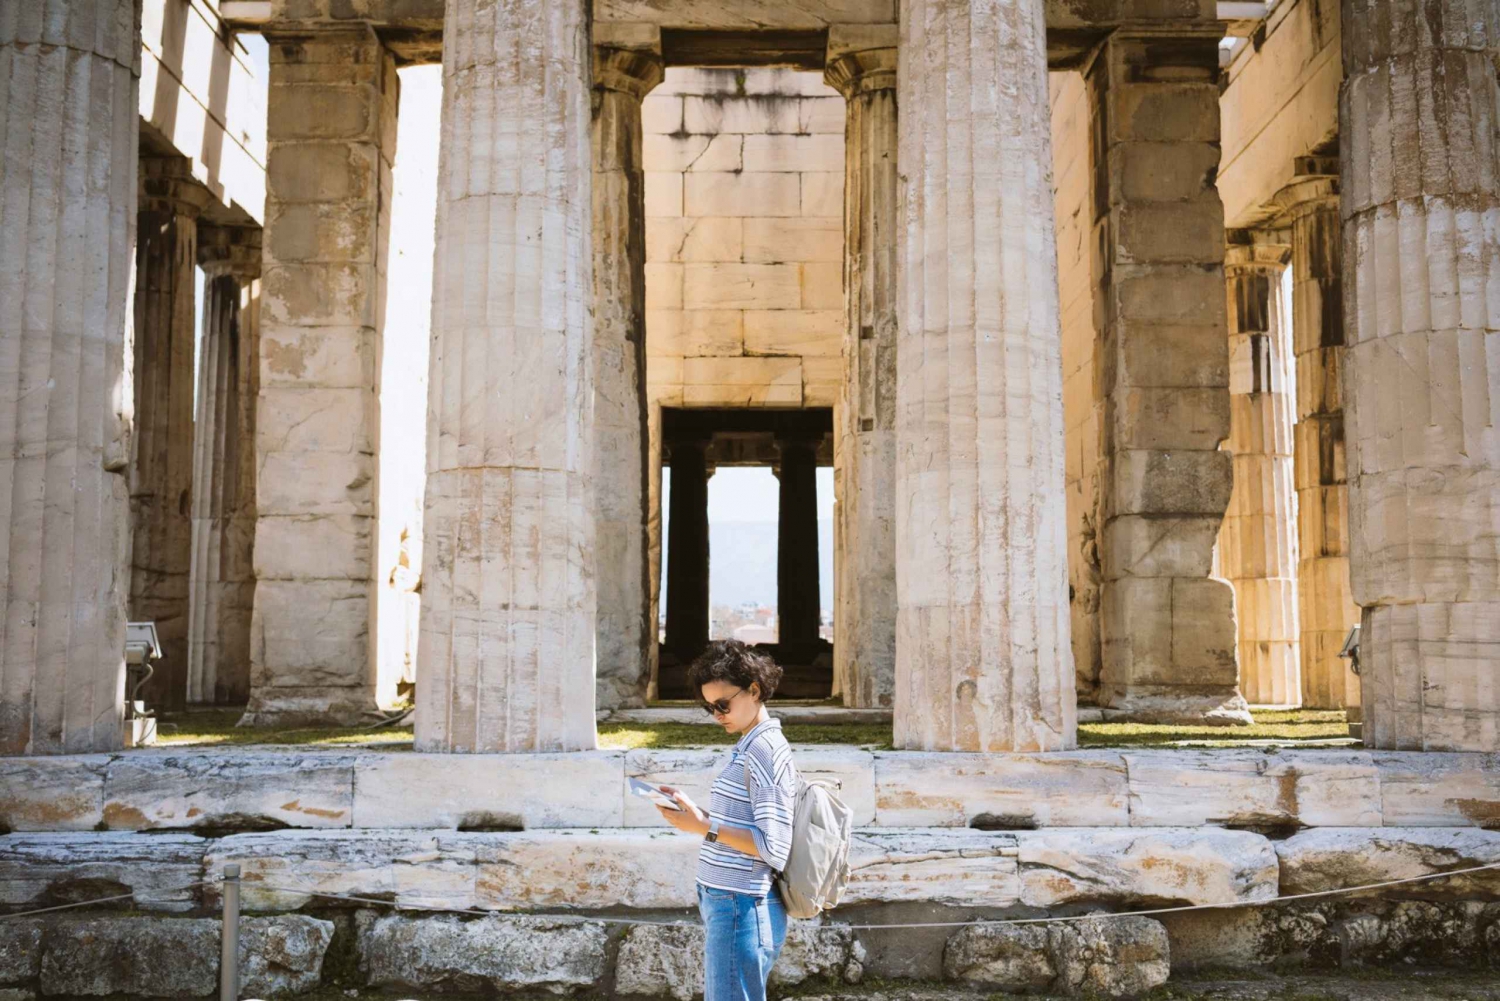 Athen an einem Tag mit frühem Eintritt Parthenon, Agora & Mittagessen